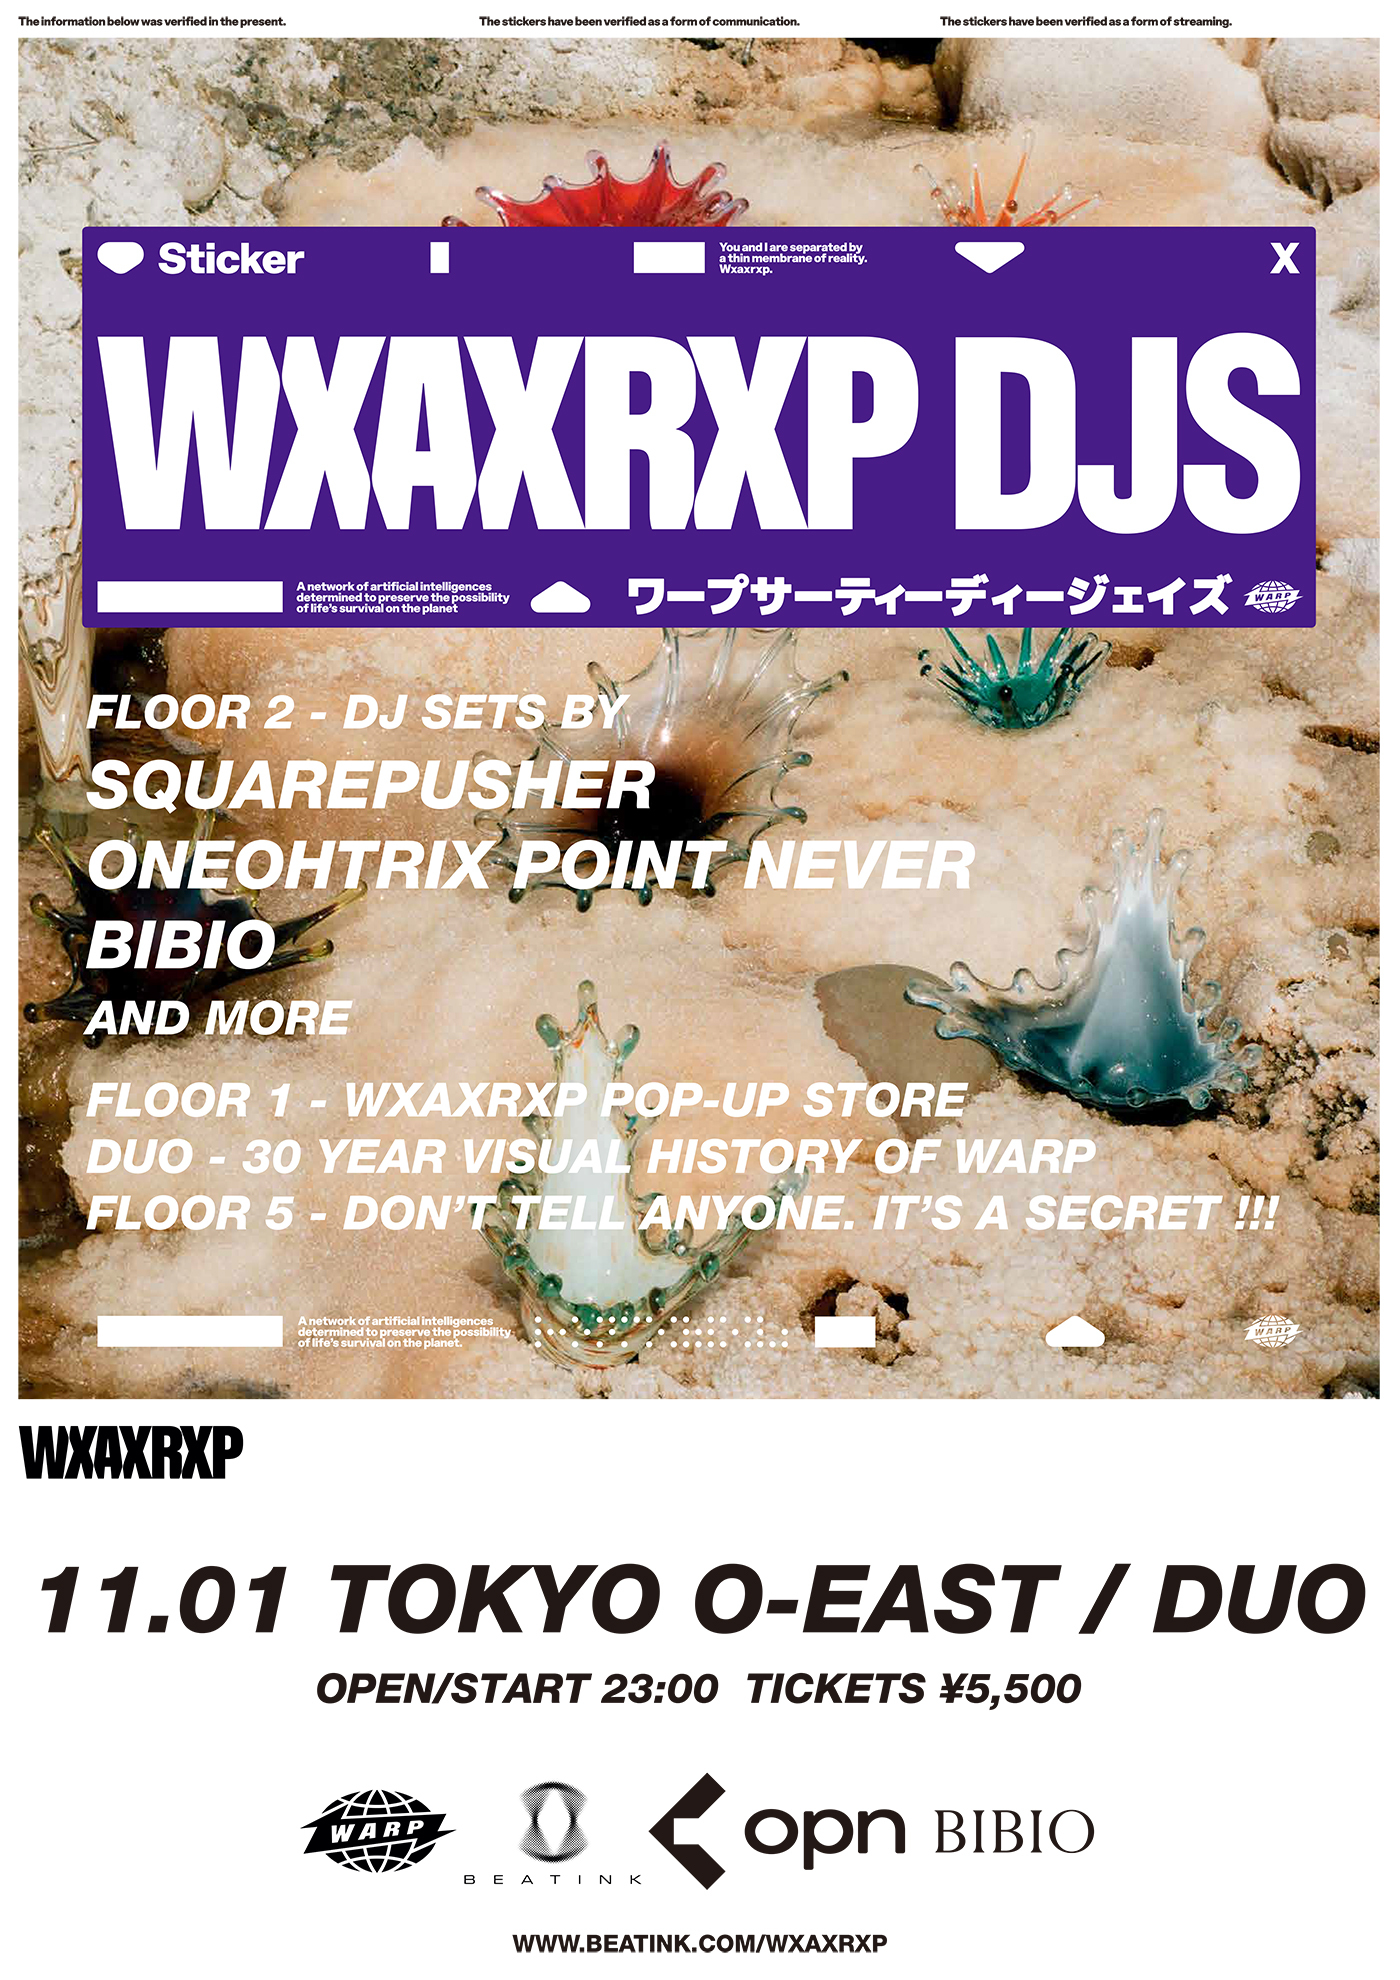 『WXAXRXP DJS』東京